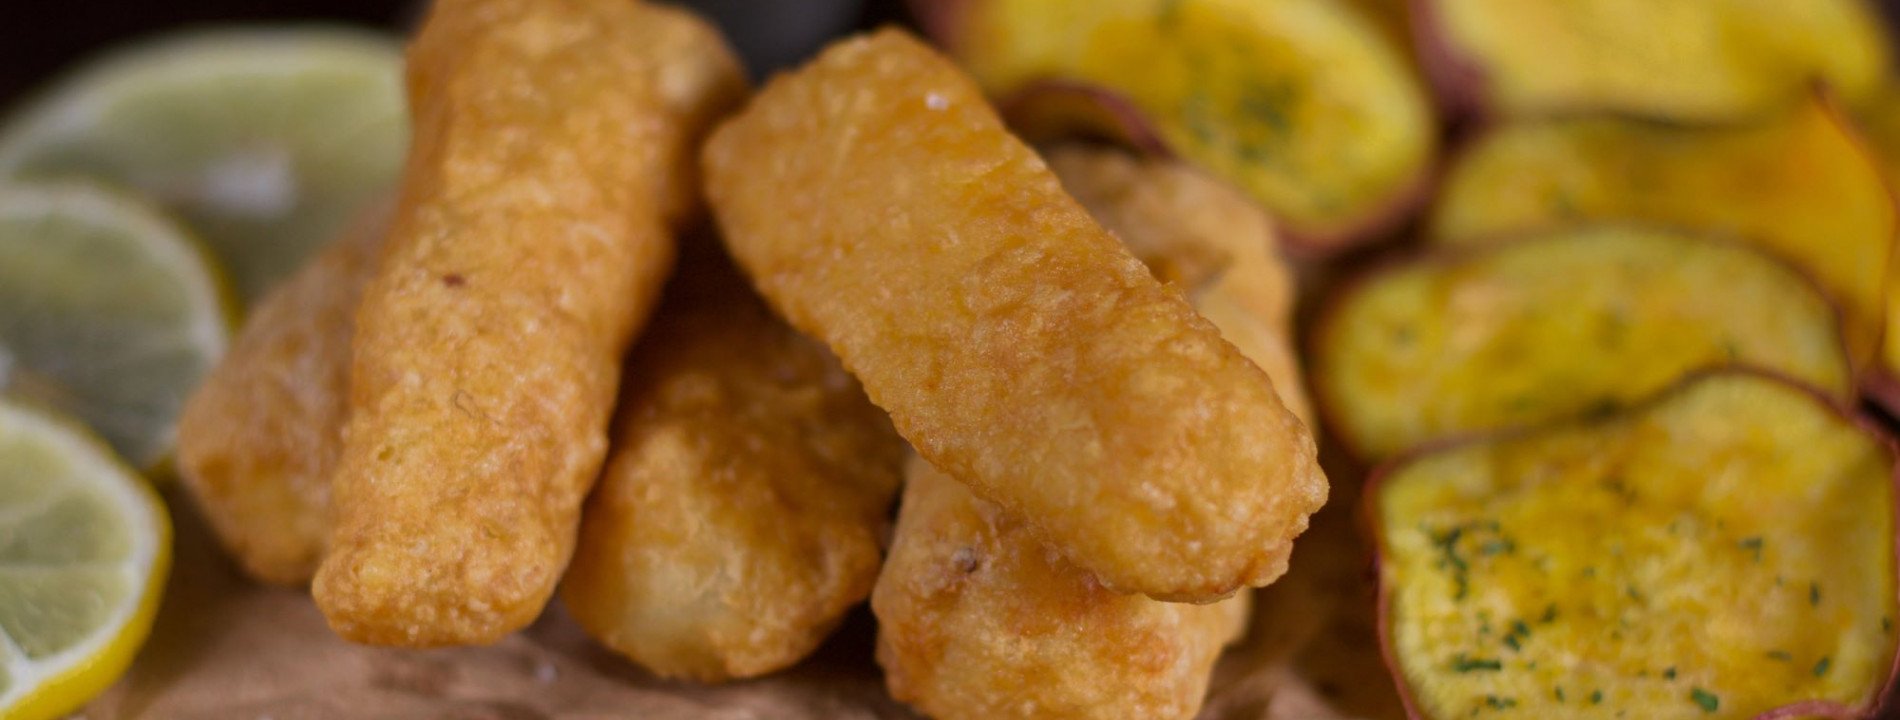 Fish & Chips de Bacalhau